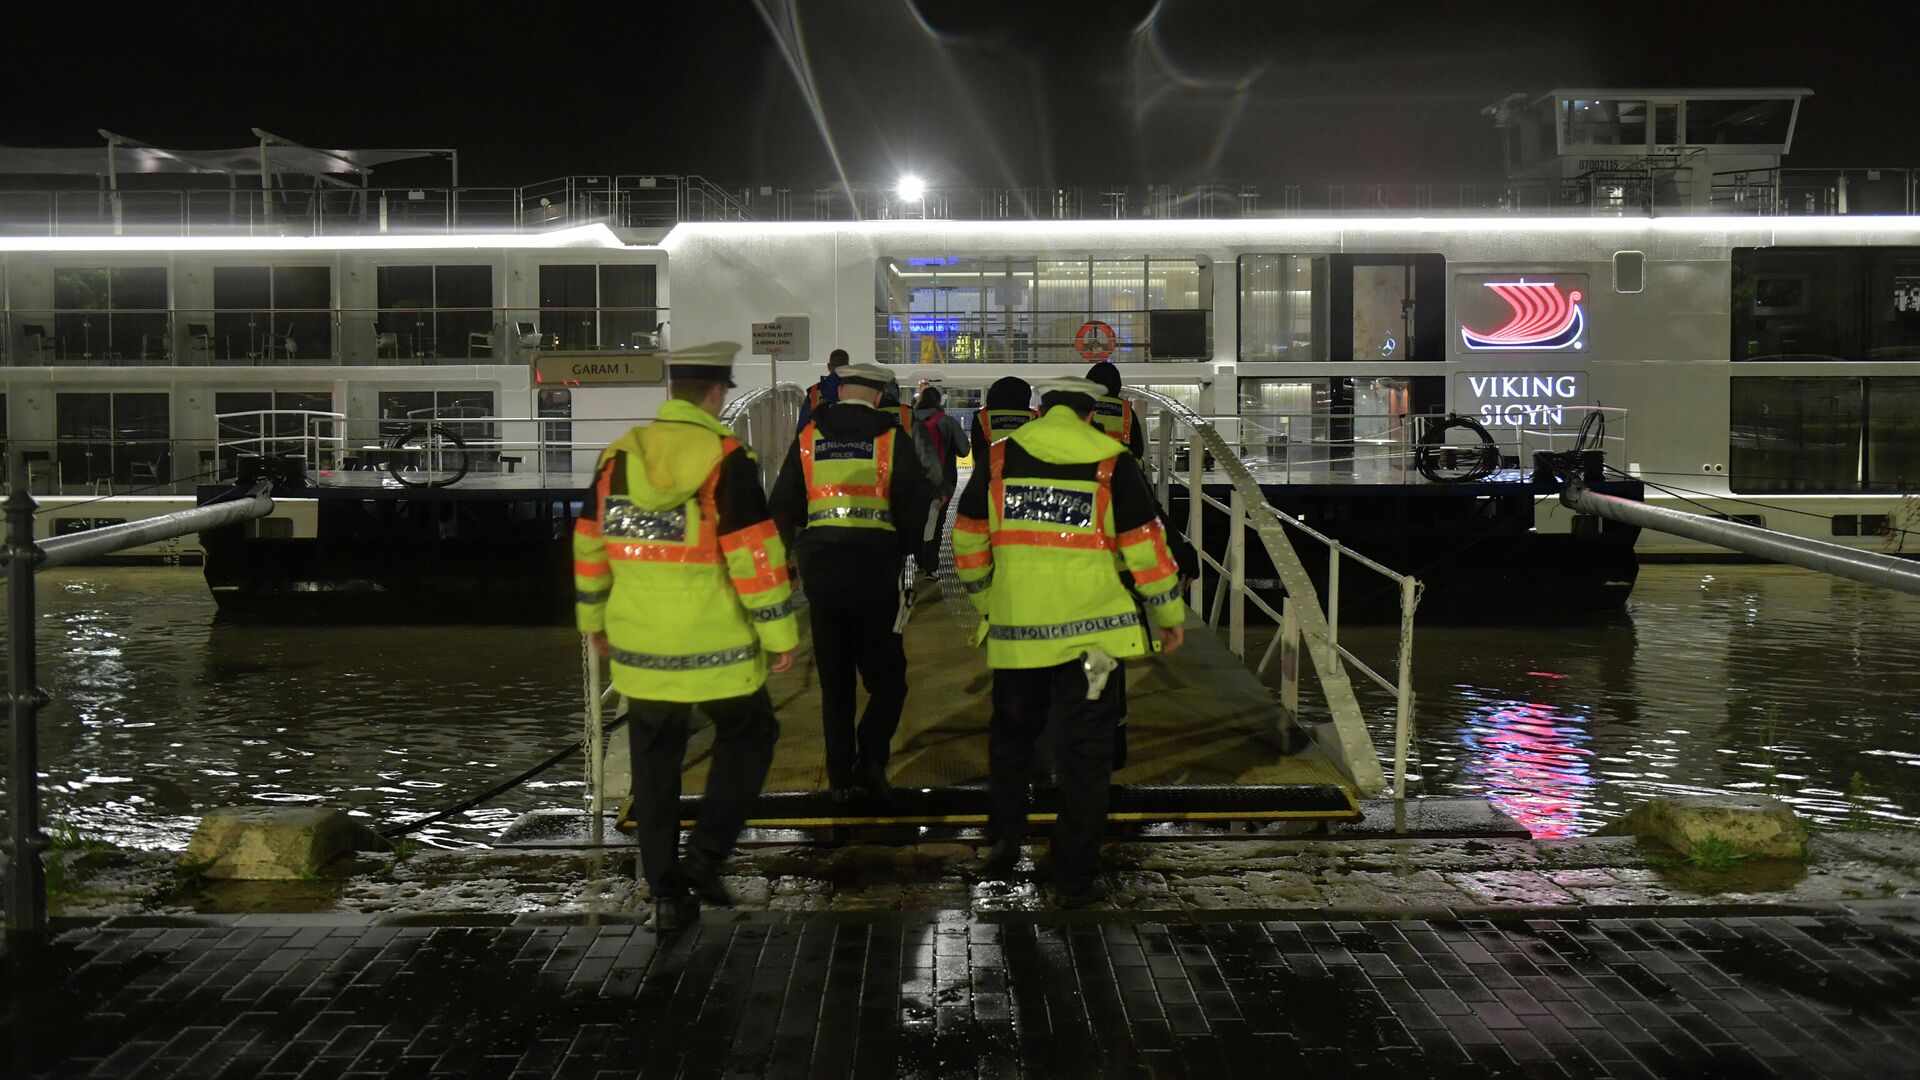 Полицейские поднимаются на борт туристического судна Viking Sigyn во время расследования аварии на реке Дунай в Будапеште, Венгрия - РИА Новости, 1920, 23.09.2020